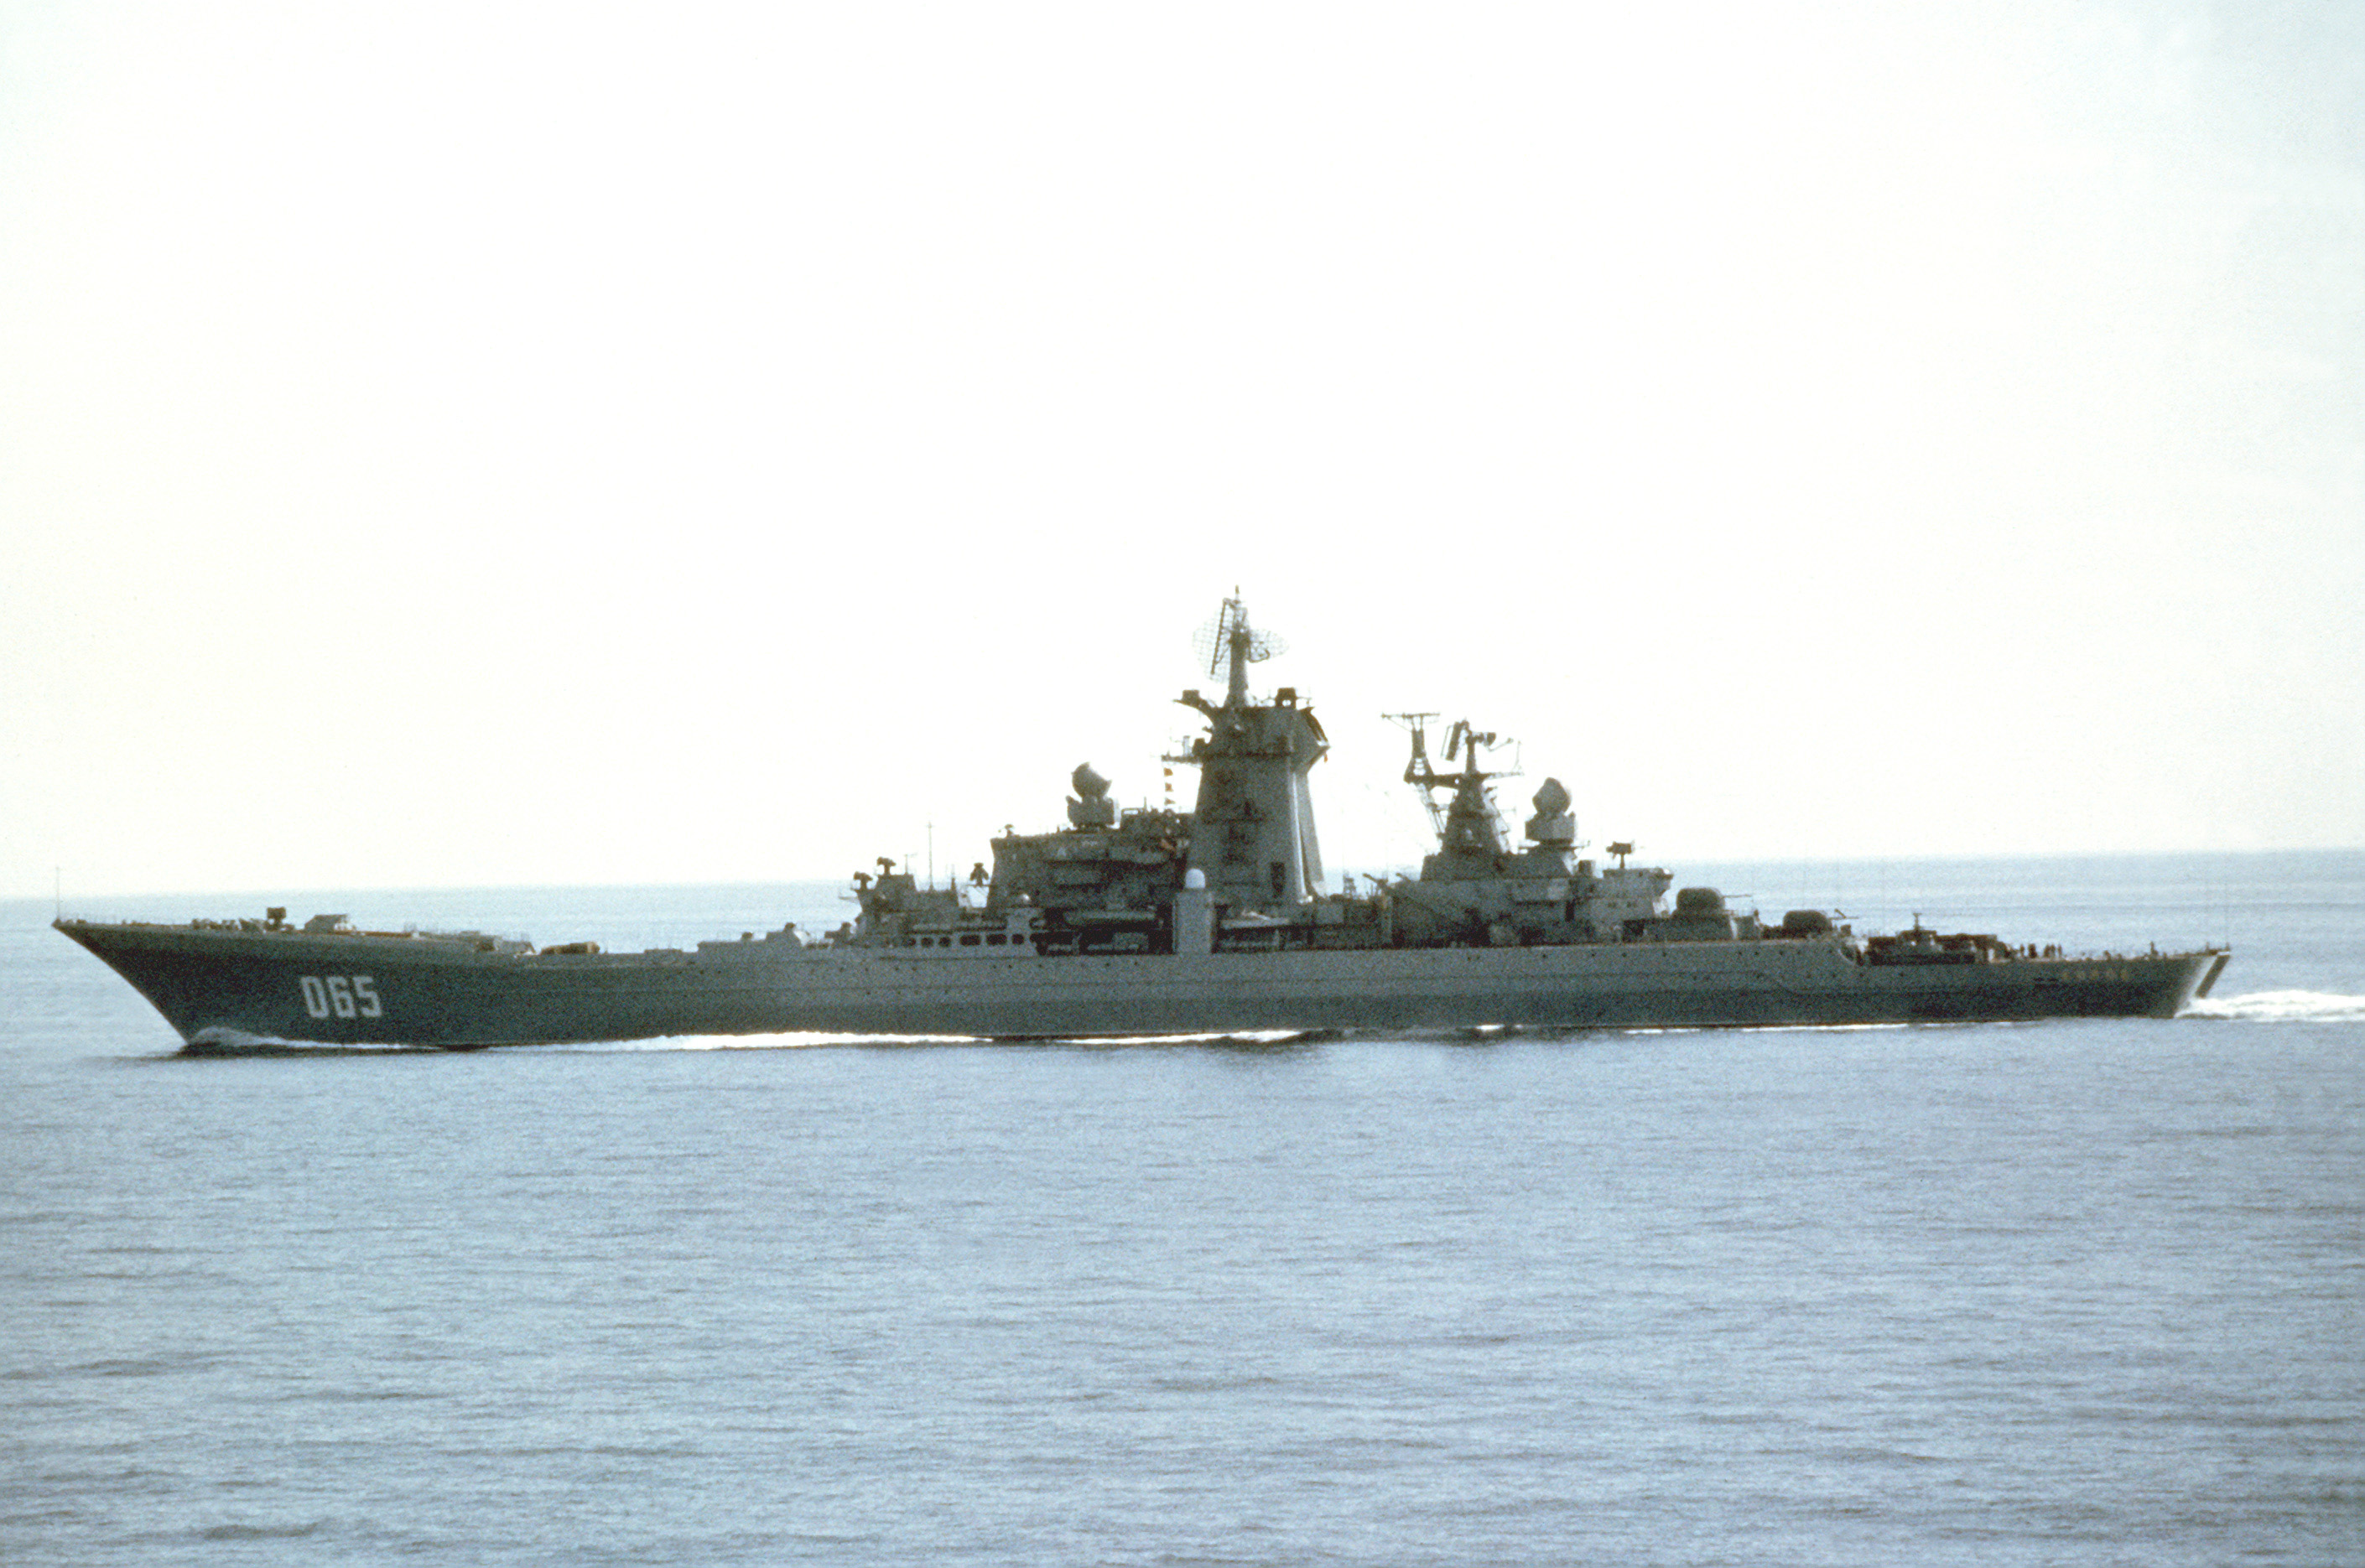 Siêu chiến hạm Đô đốc Nakhimov với các hệ thống vũ khí tiên tiến nhất của Nga